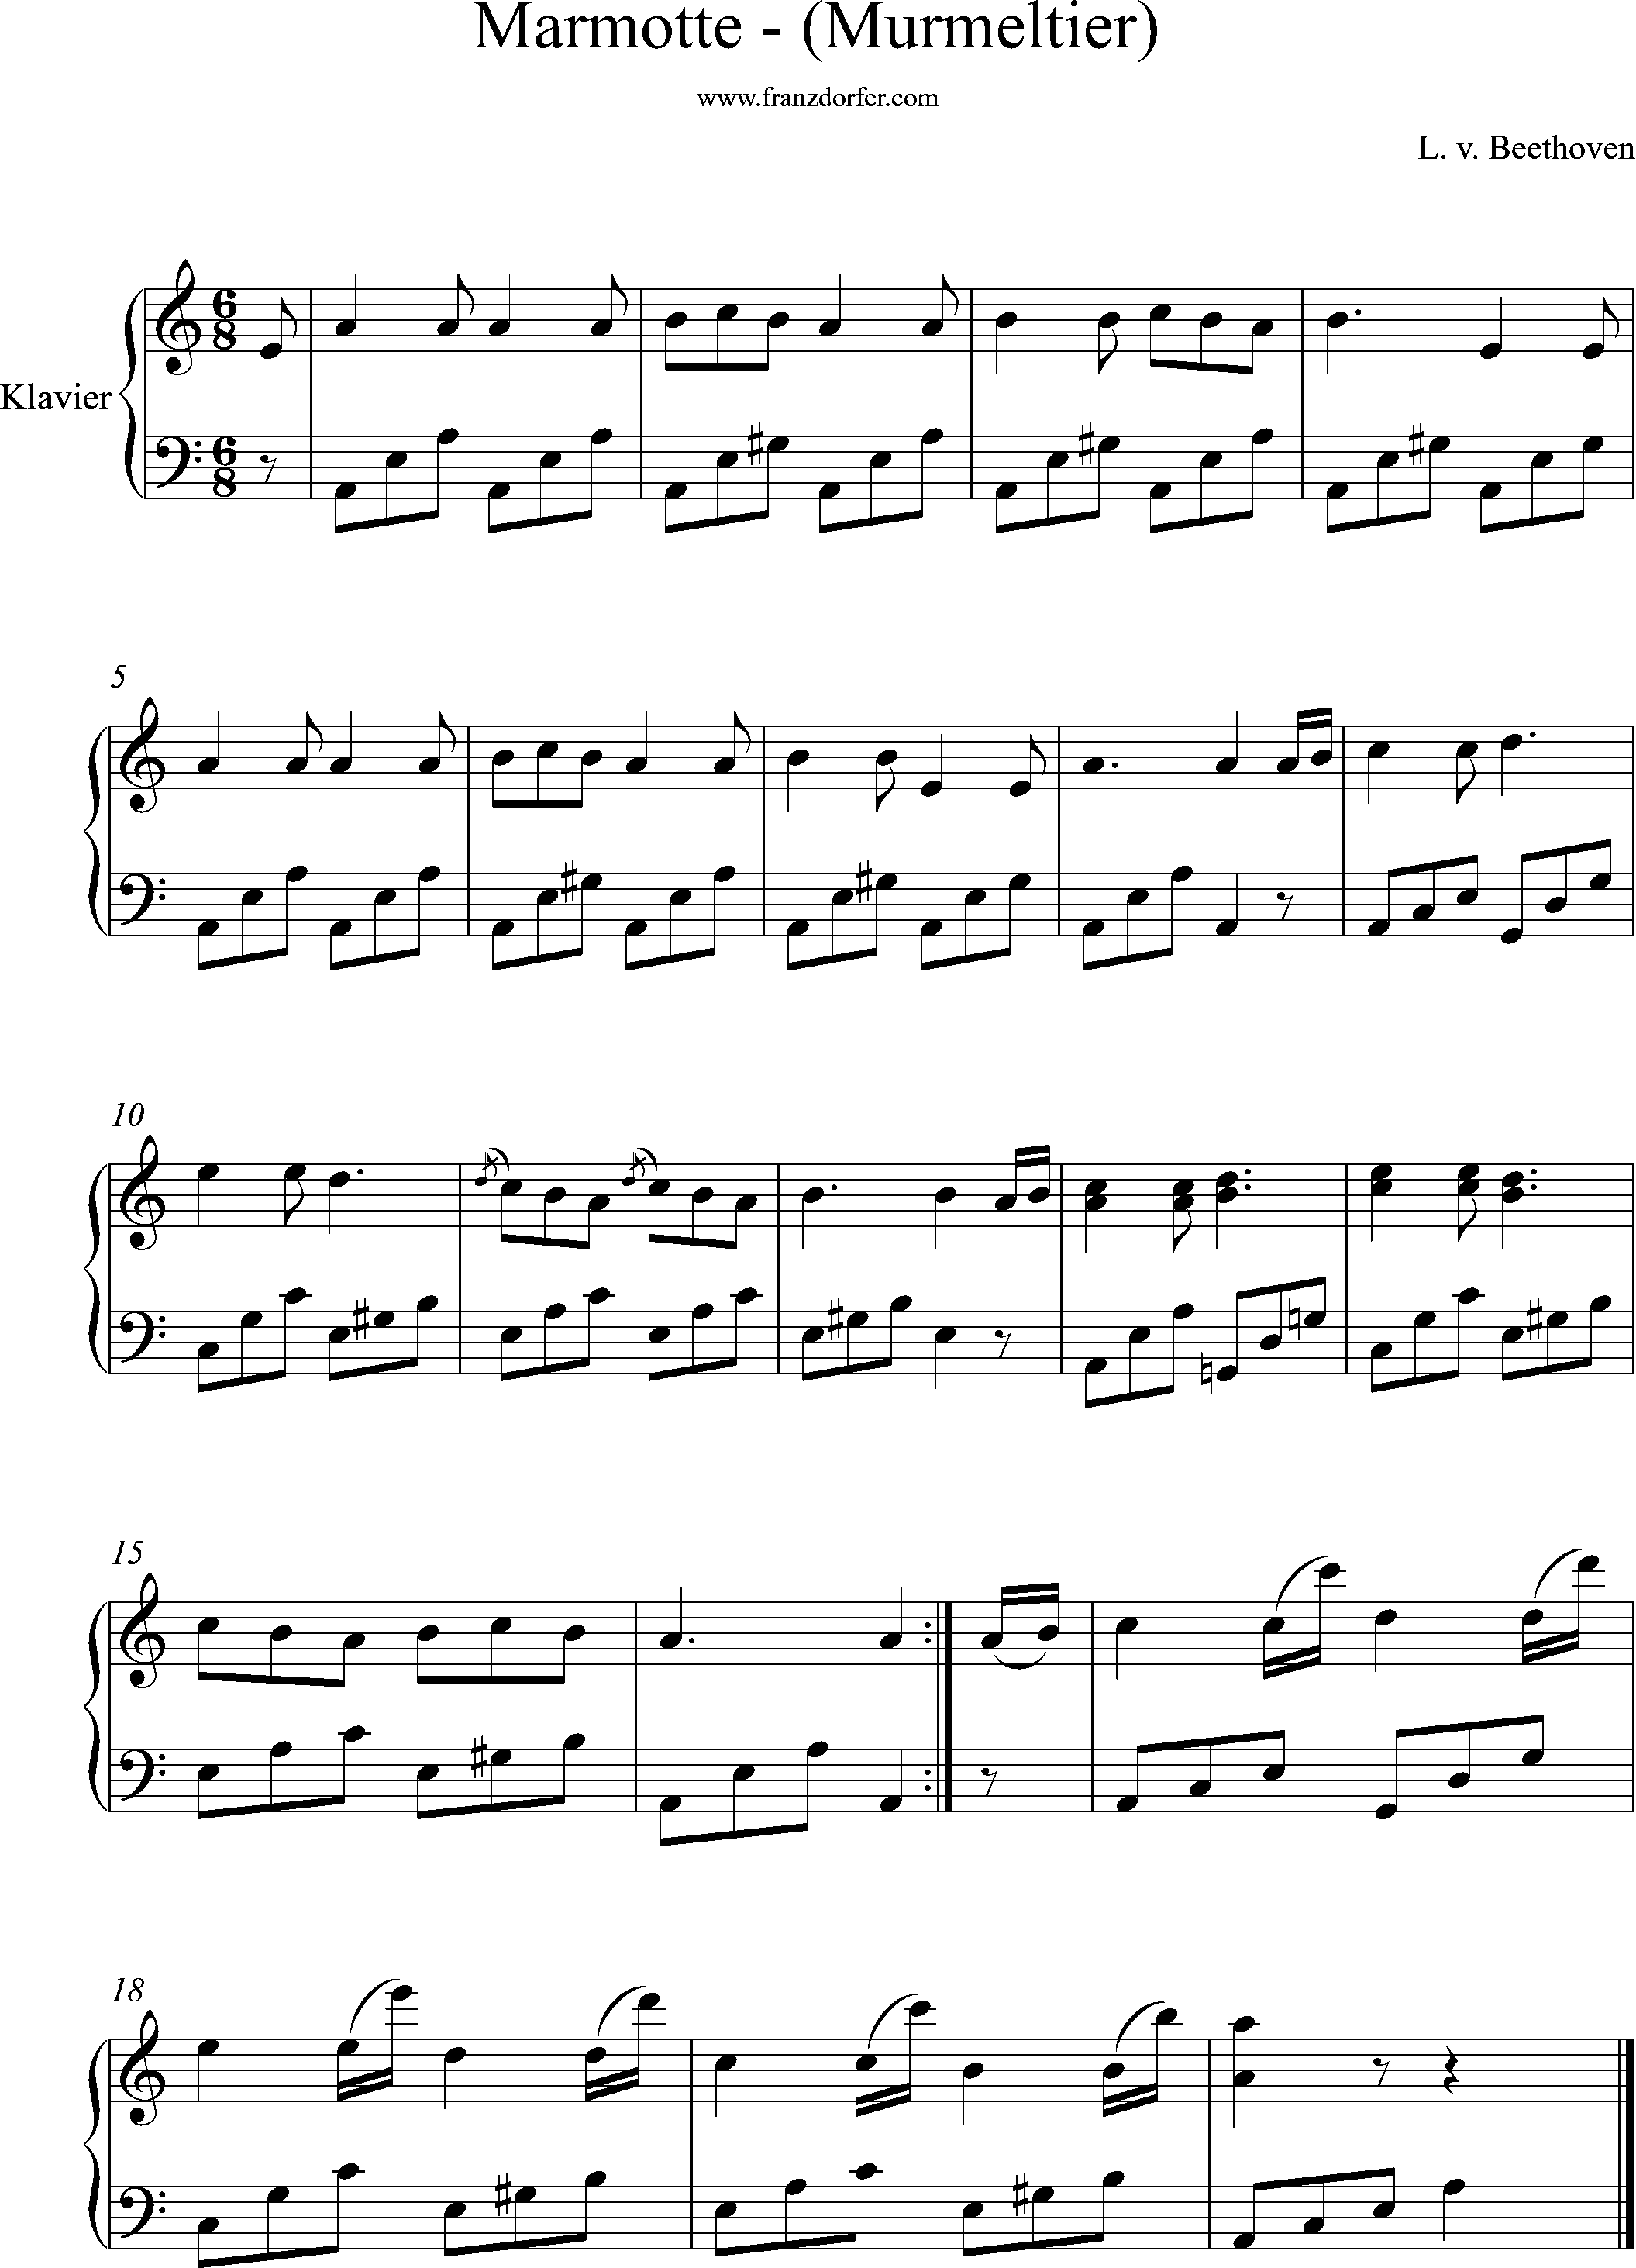 Piano sheetmusic, -Marmoerette, Beethoven